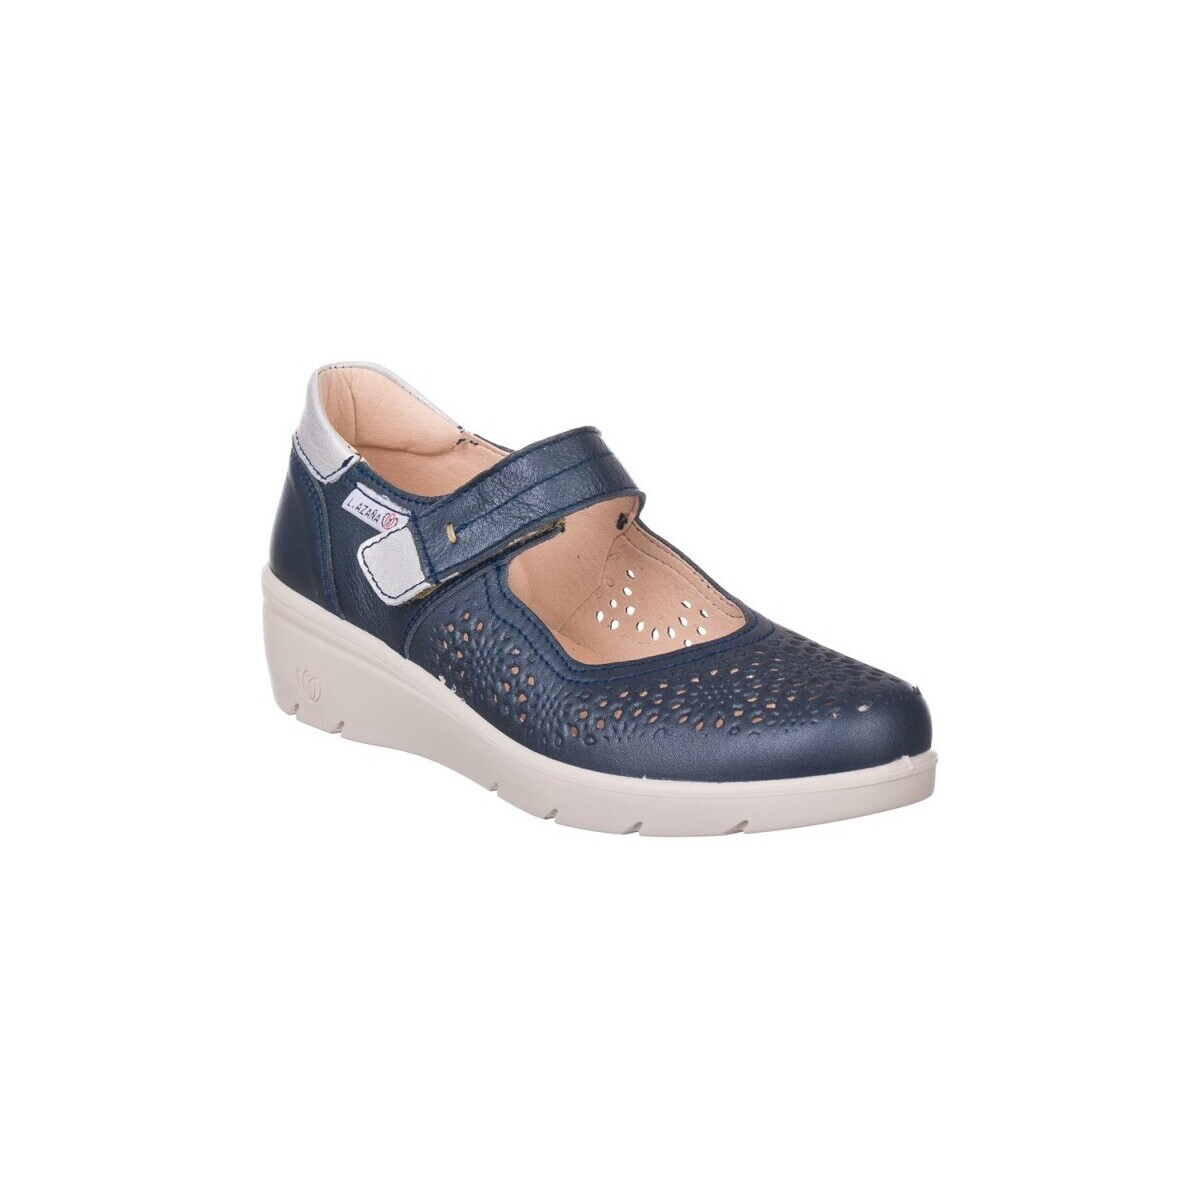 Cipők Női Rövid szárú edzőcipők Laura Azaña MOKASZIN  26814 Kék